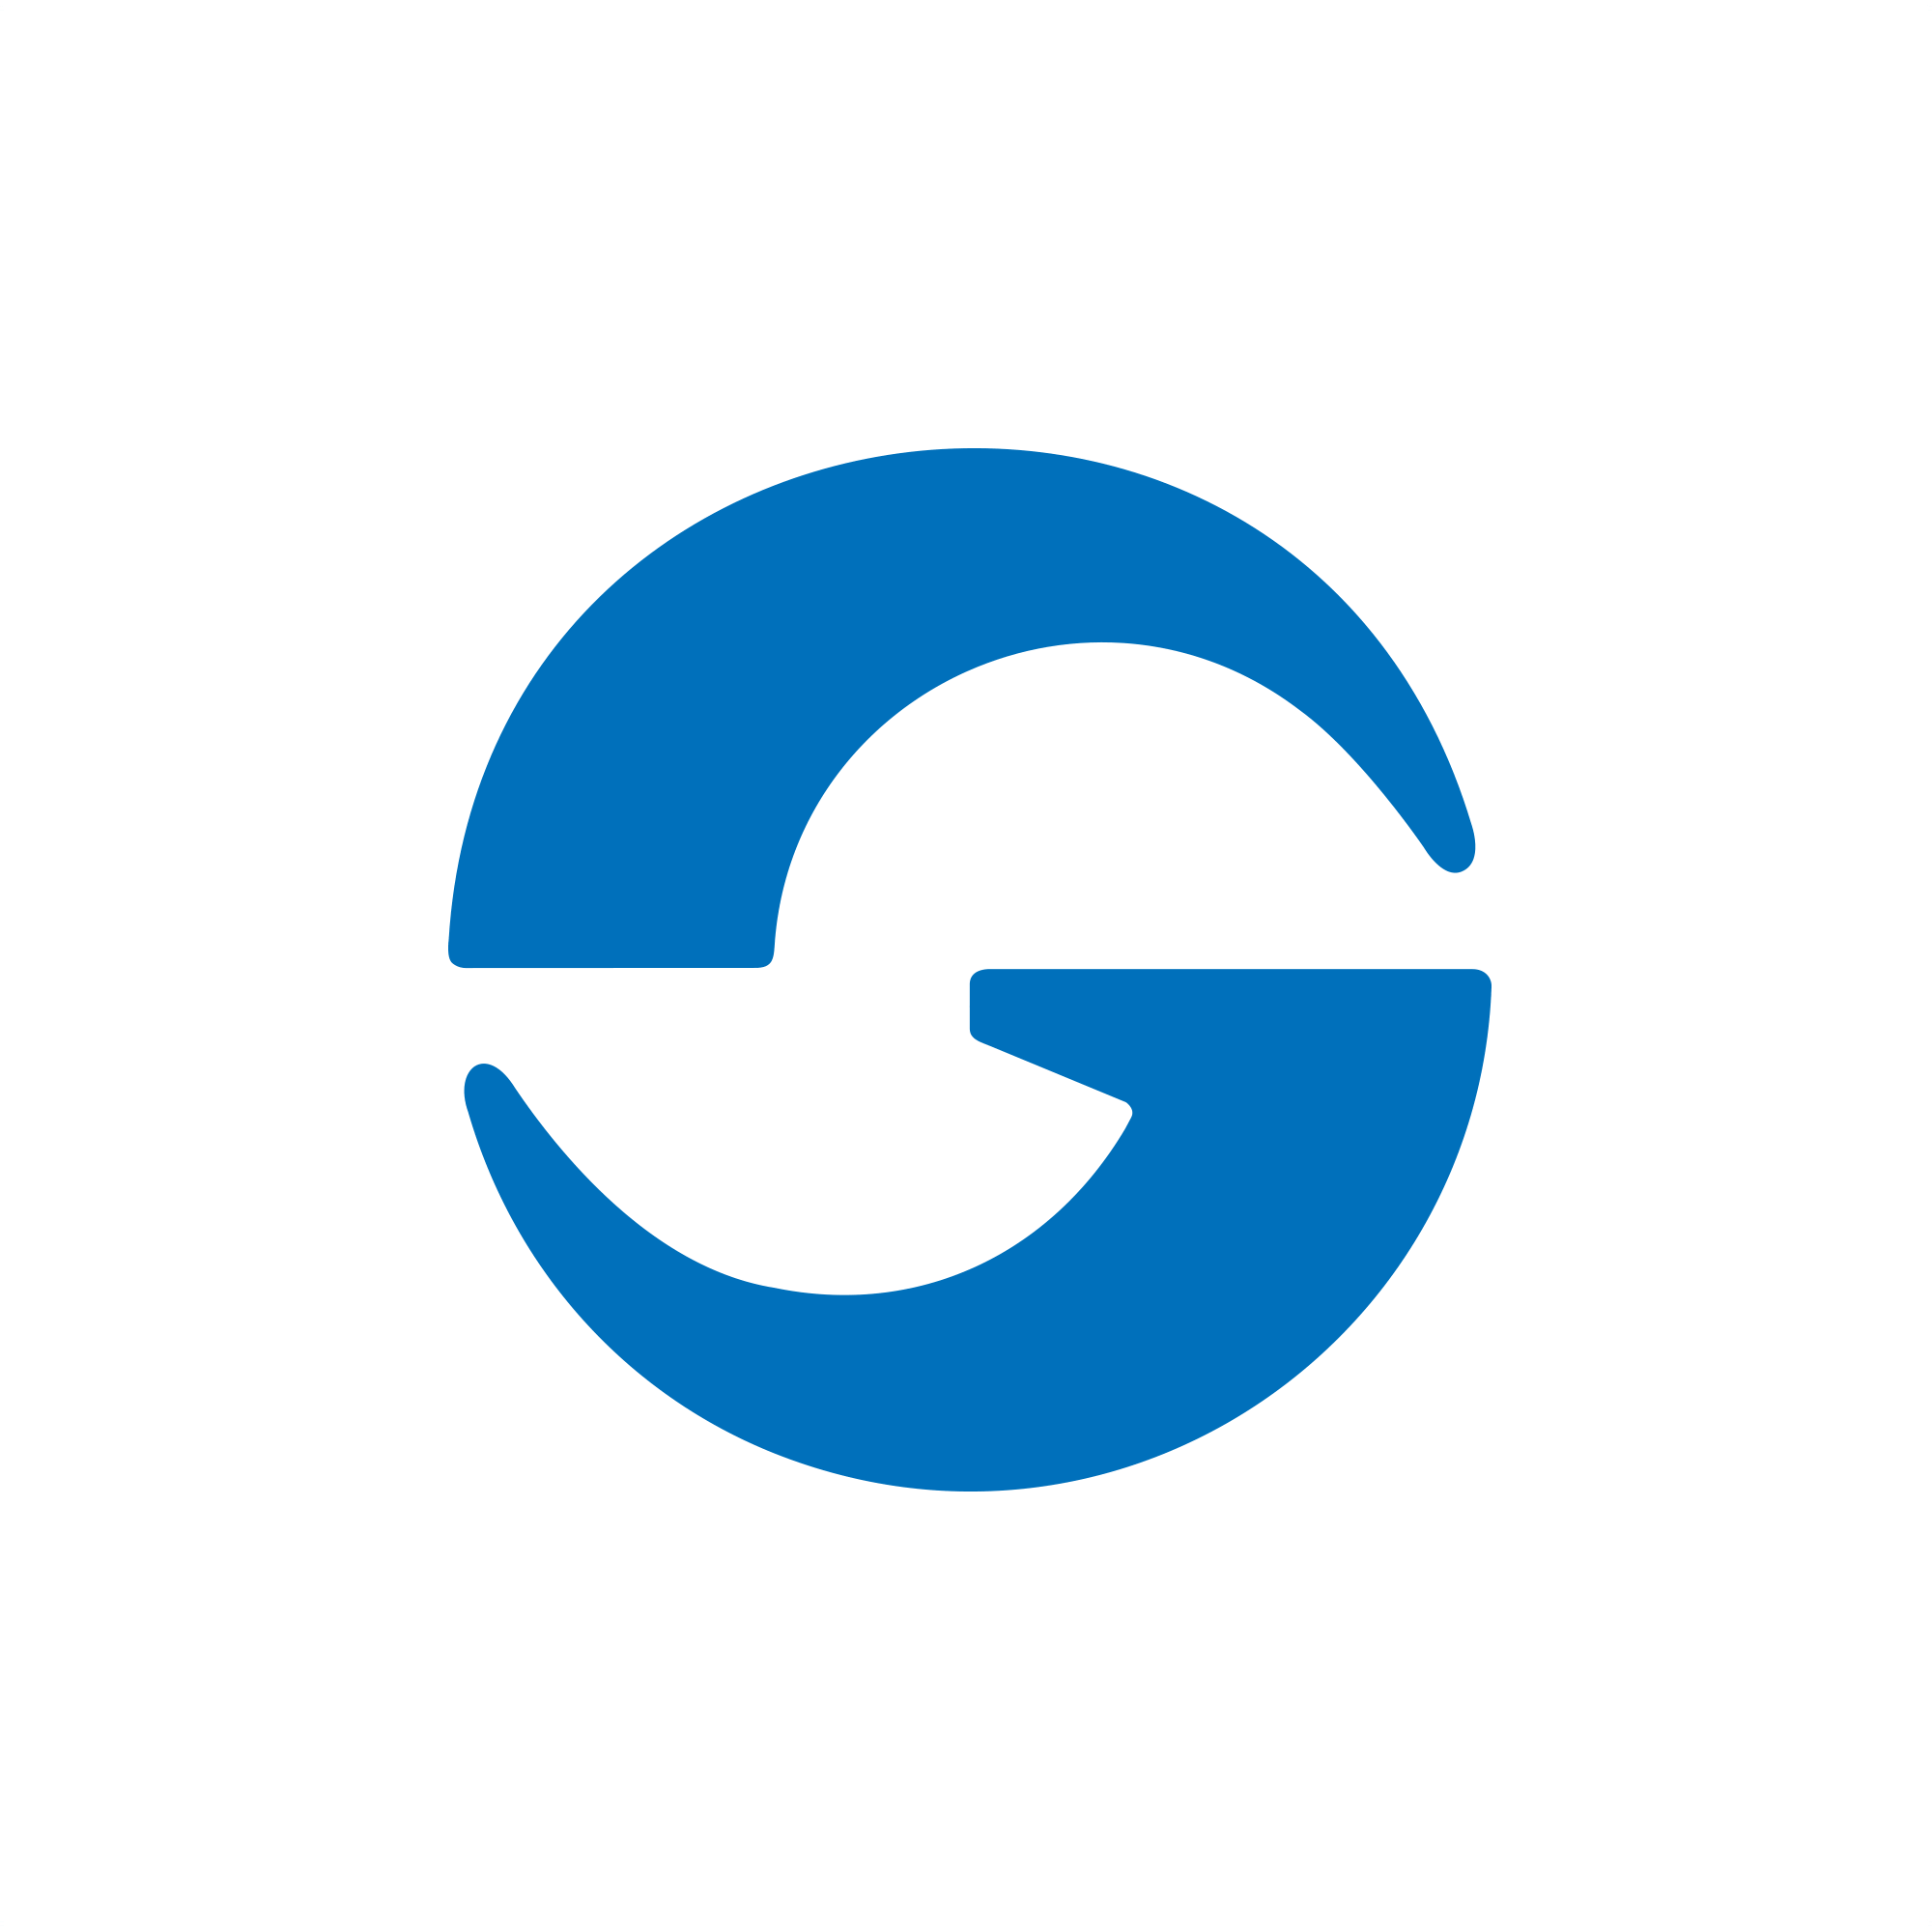 Letter g logos